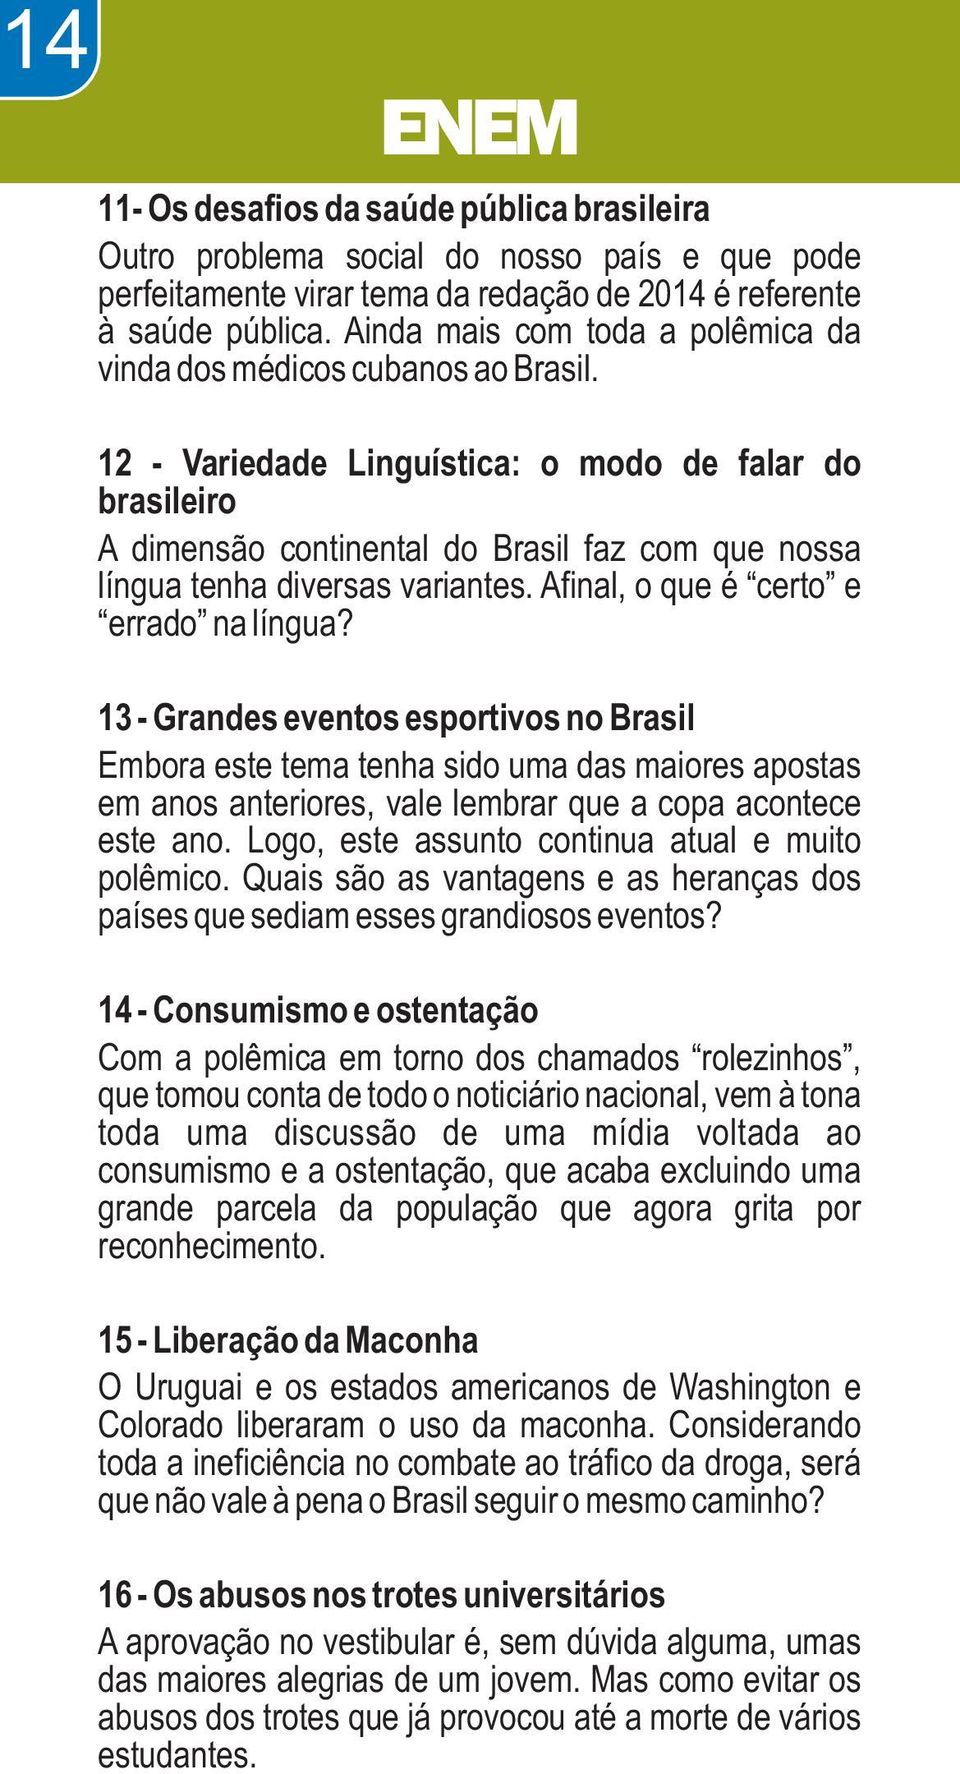 12 - Variedade Linguística: o modo de falar do brasileiro A dimensão continental do Brasil faz com que nossa língua tenha diversas variantes. Afinal, o que é certo e errado na língua?